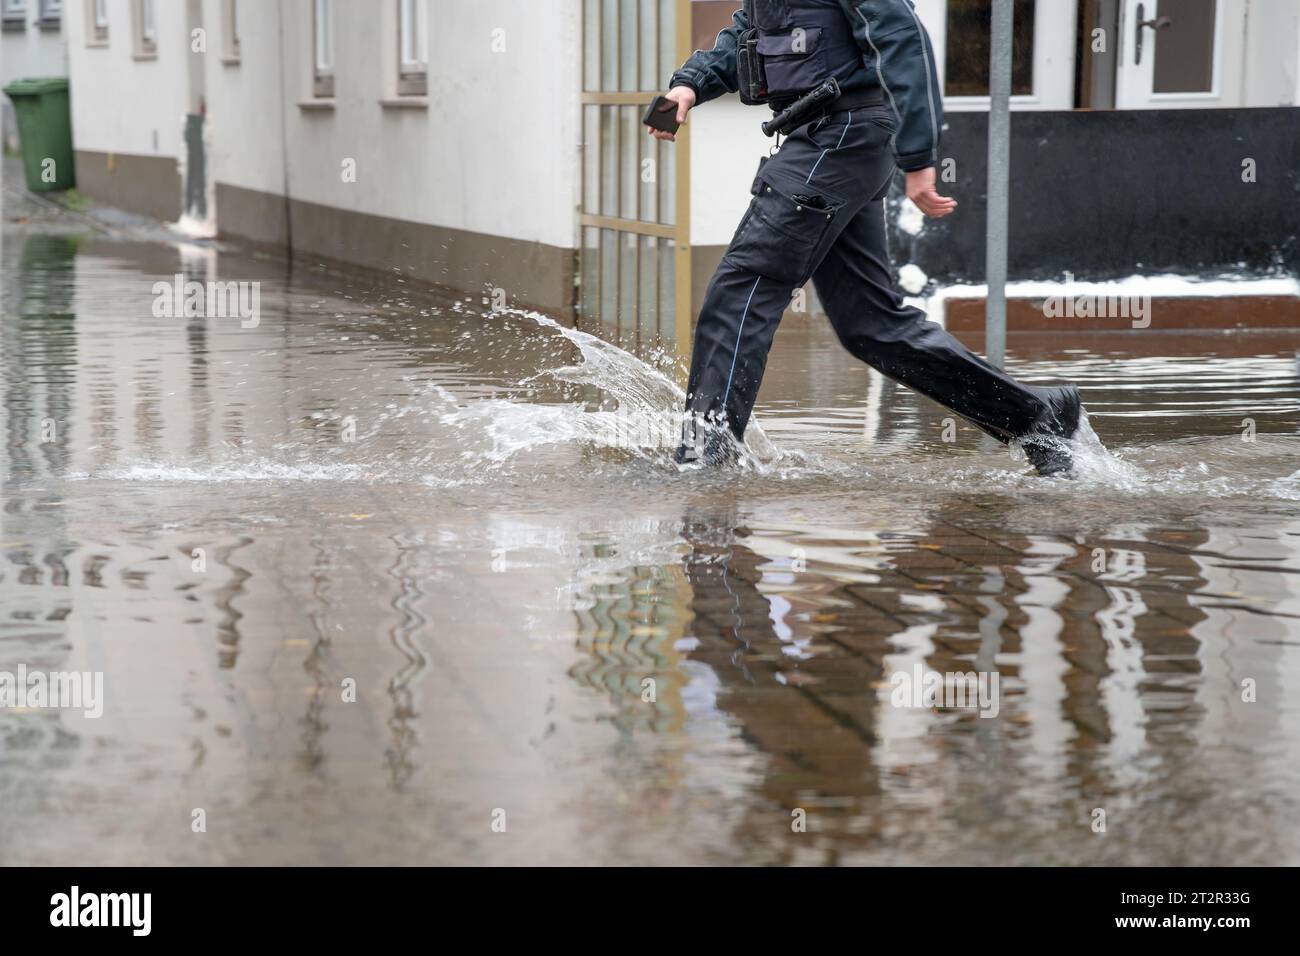 Poliziotto che corre attraverso l'acqua di una strada allagata durante l'alta acqua del fiume Trave nel centro storico di Lubeck, nel Mar Baltico in Germania, c Foto Stock